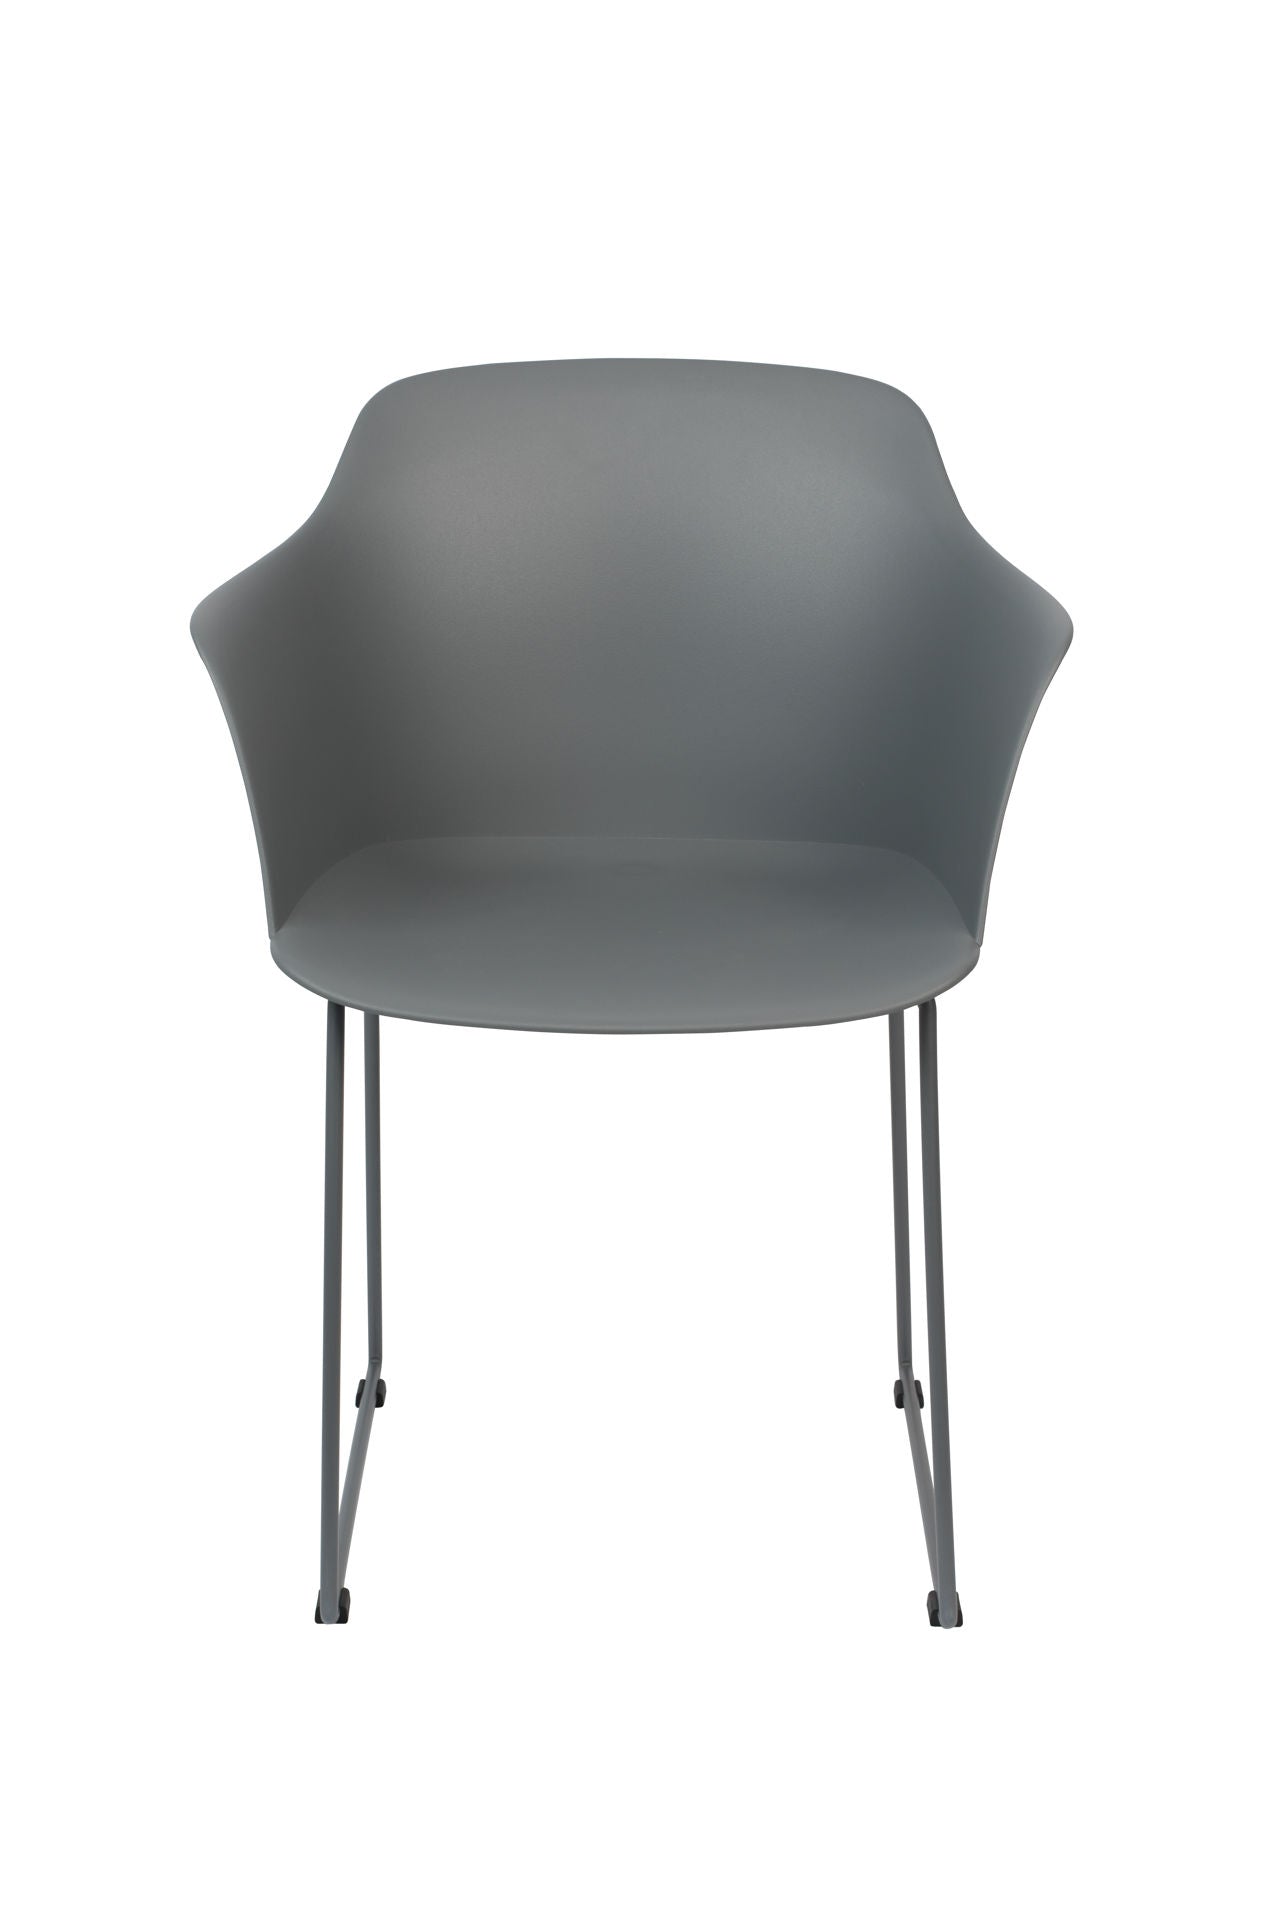 Nancy's Lake Villa Chair - Scandinave - Gris - Polypropylène, Plastique, Acier - 54 cm x 58 cm x 81,5 cm